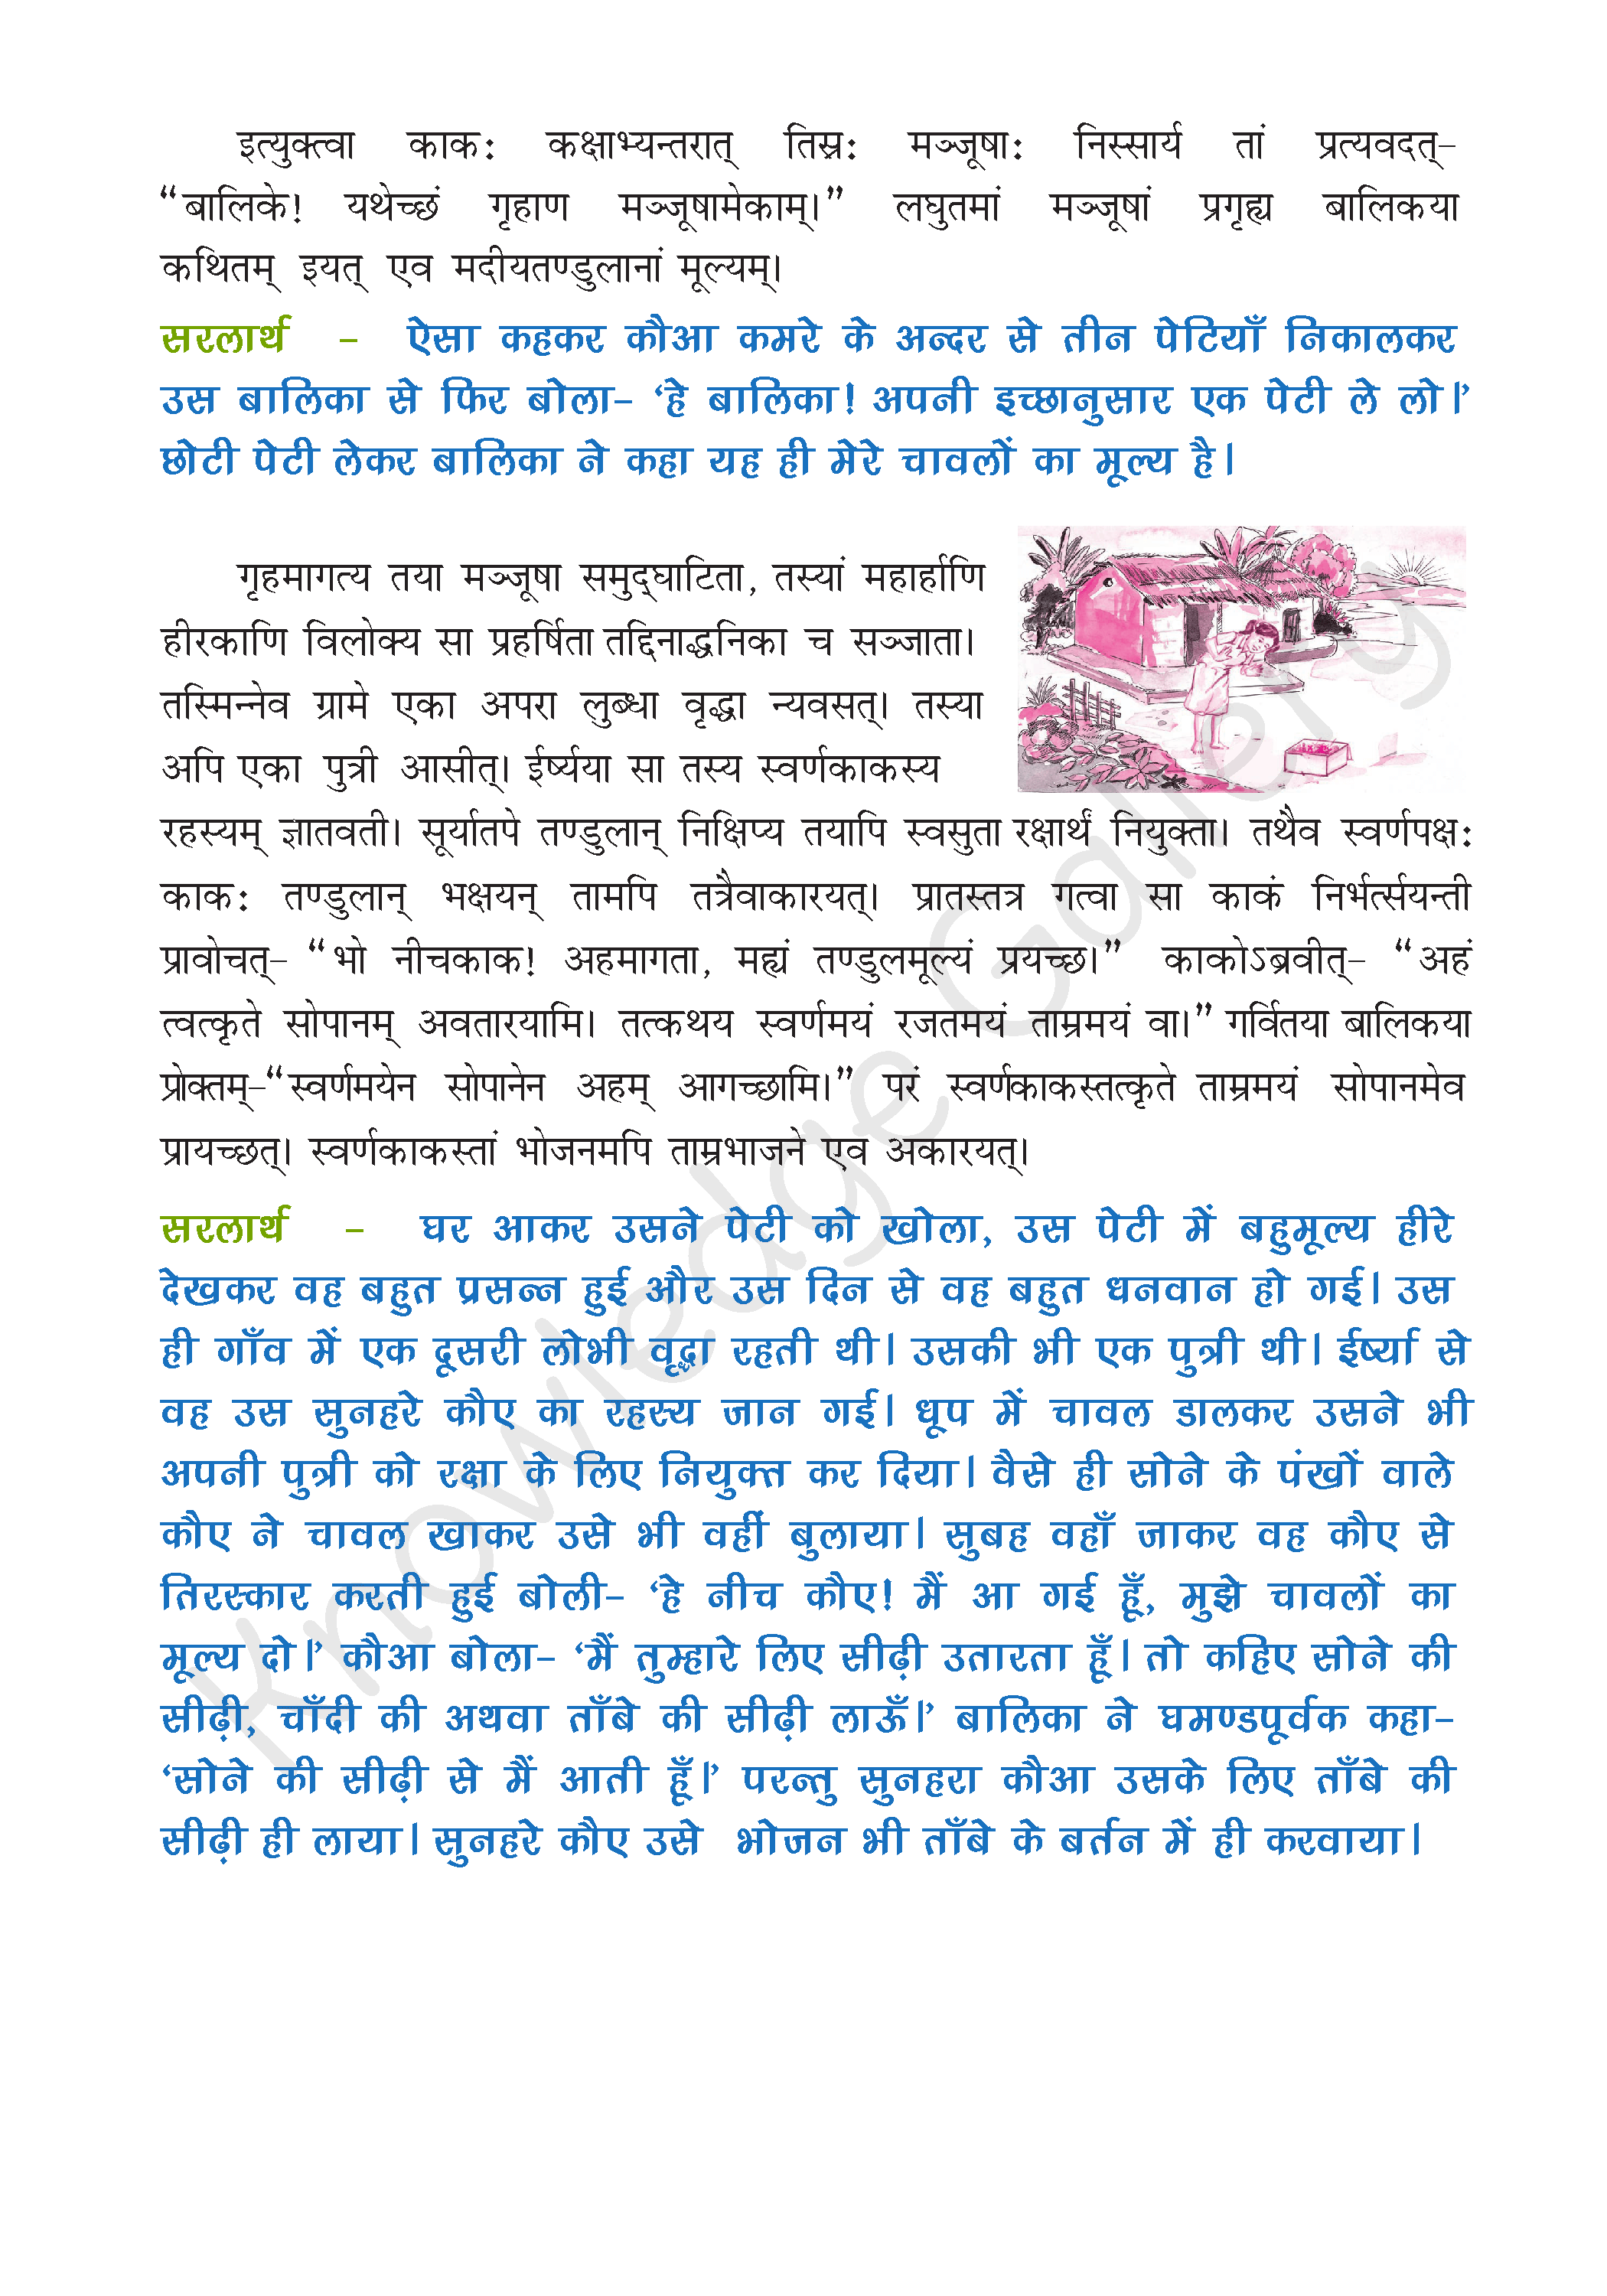 NCERT Solution For Class 9 Sanskrit Chapter 2 part 3